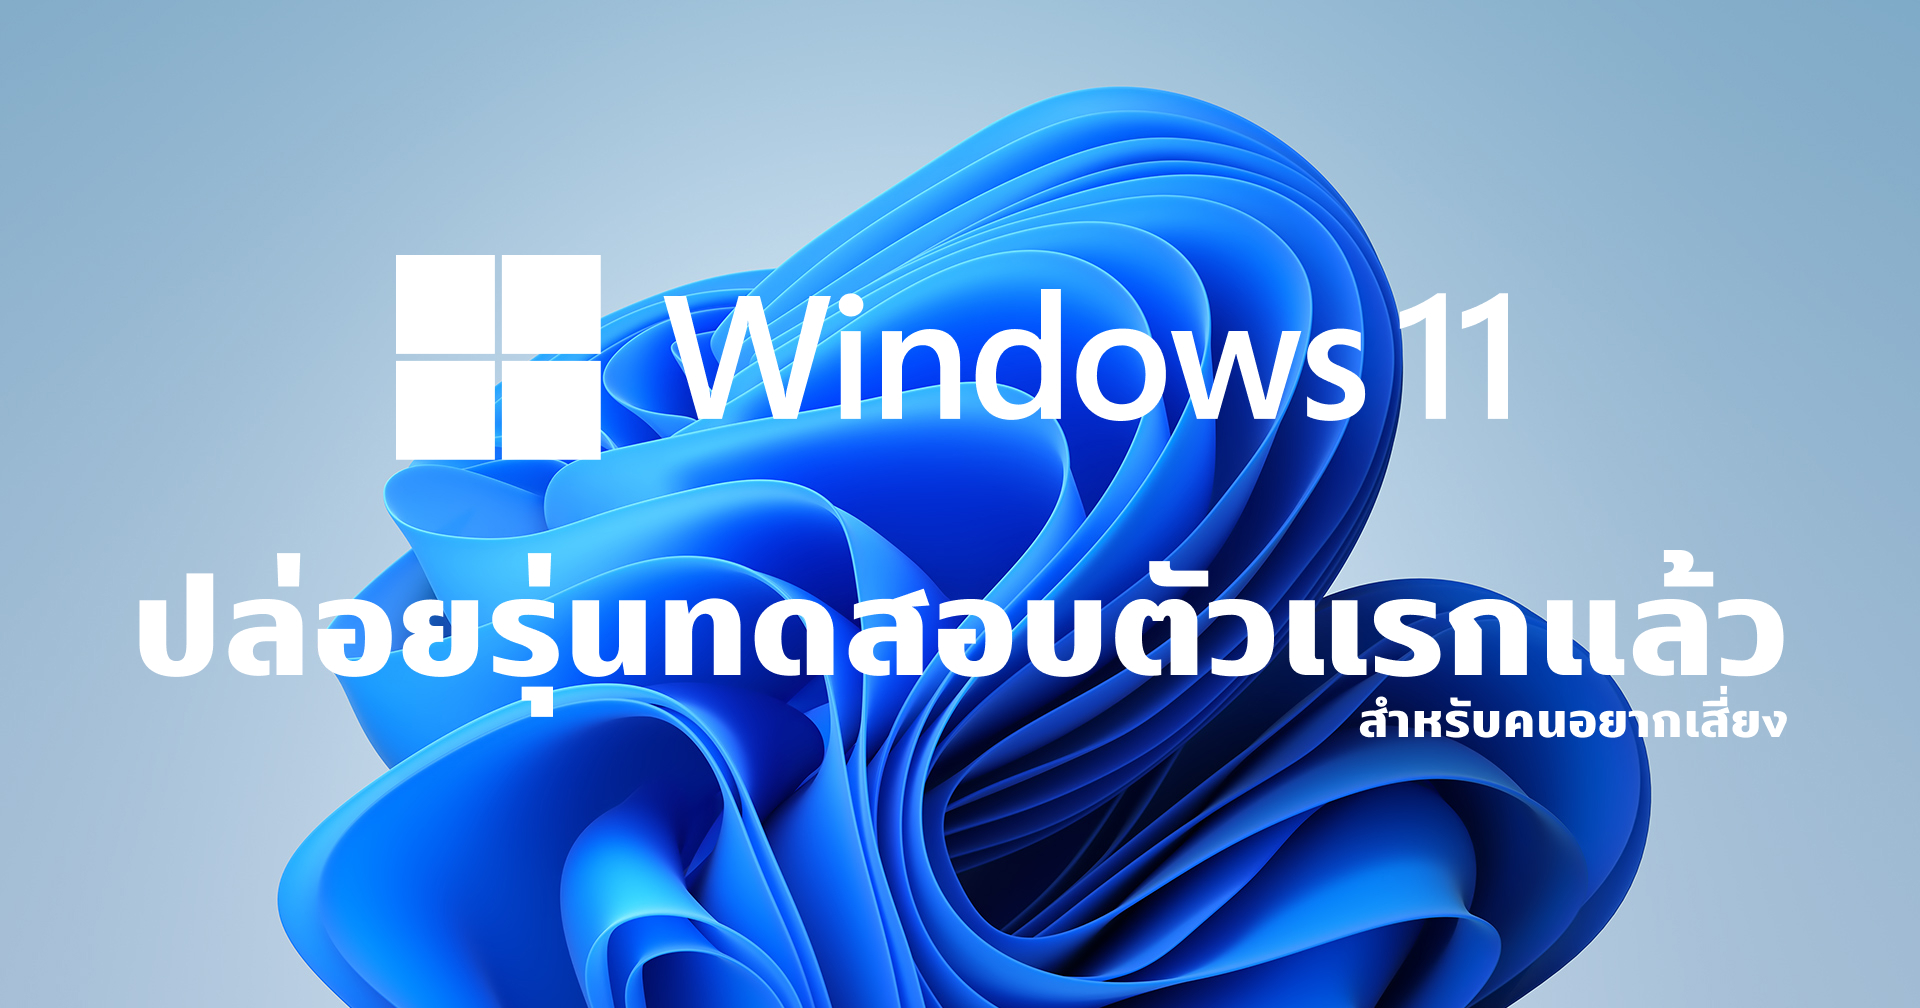 มาแล้ว!! Windows 11 Insider Preview ตัวแรกสำหรับคนอยากลองอยากเสี่ยง